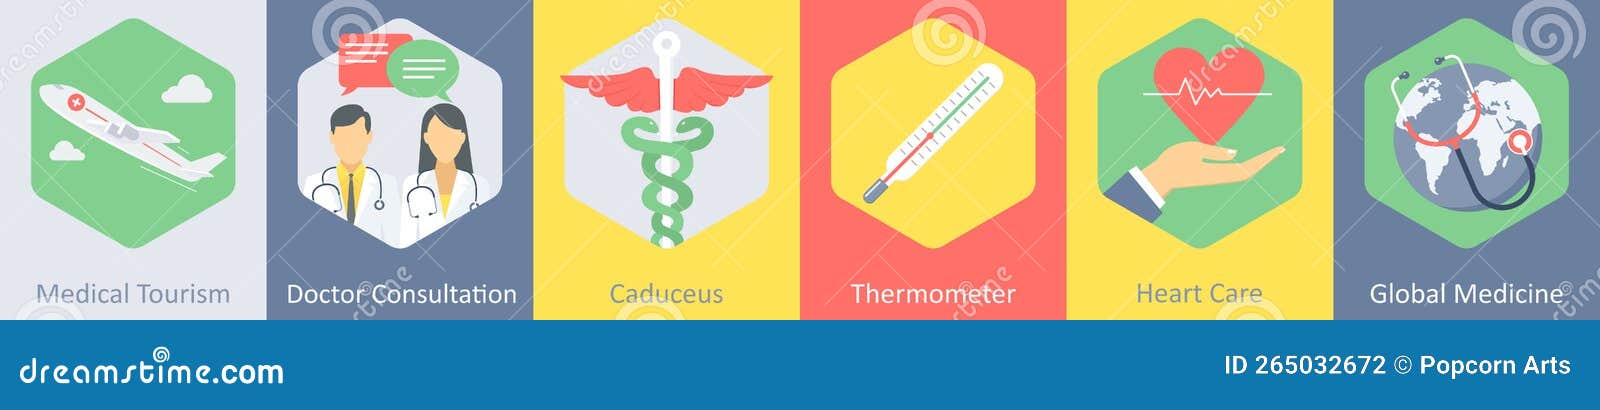 a set of 6 medical icons as medical tourism, dostor consultation, caduceus